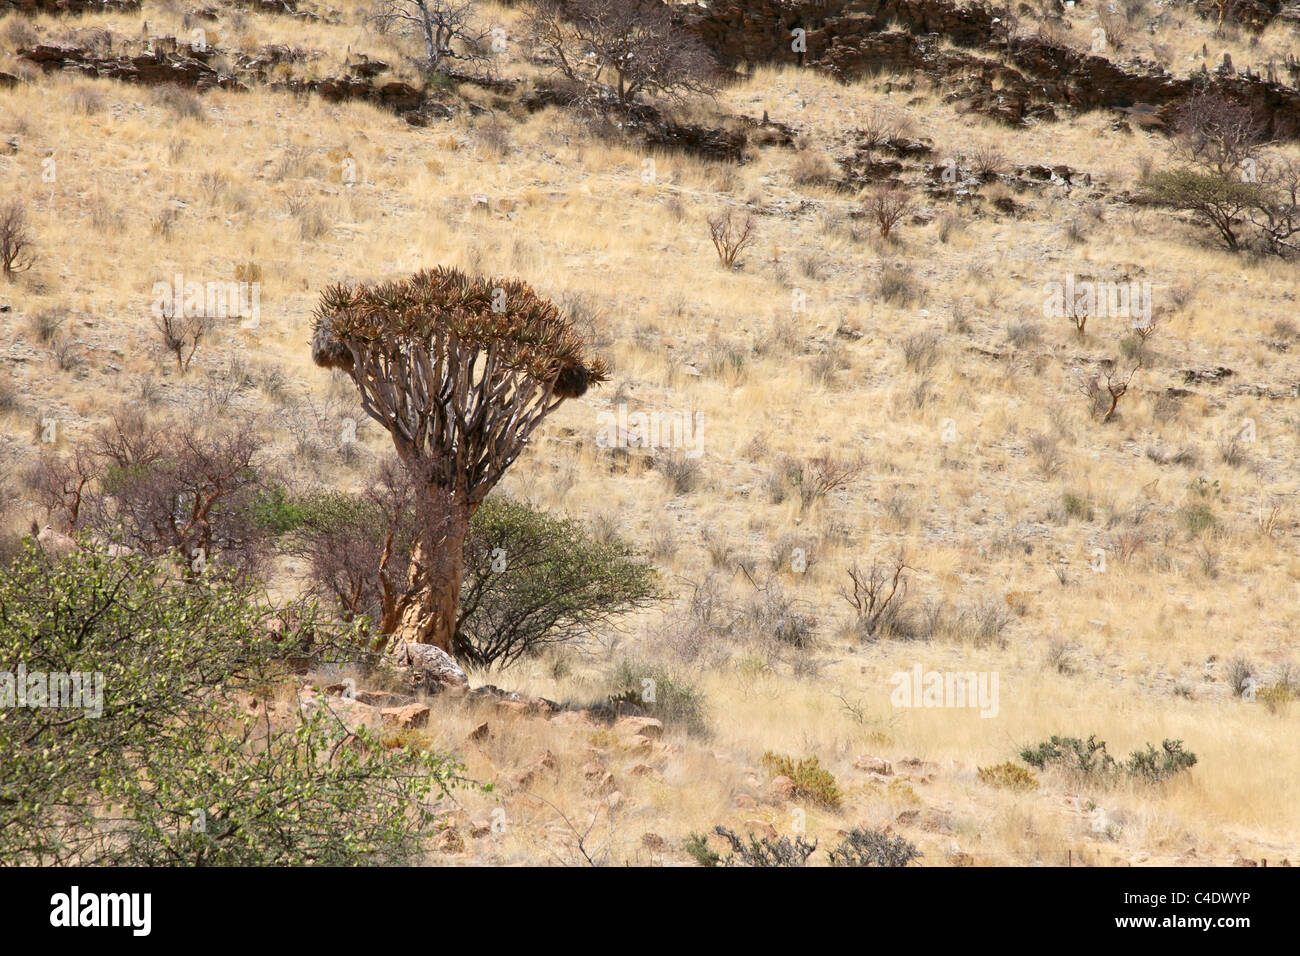 Wild Quiver Tree (Aloe dichotoma) in Namibia Stock Photo